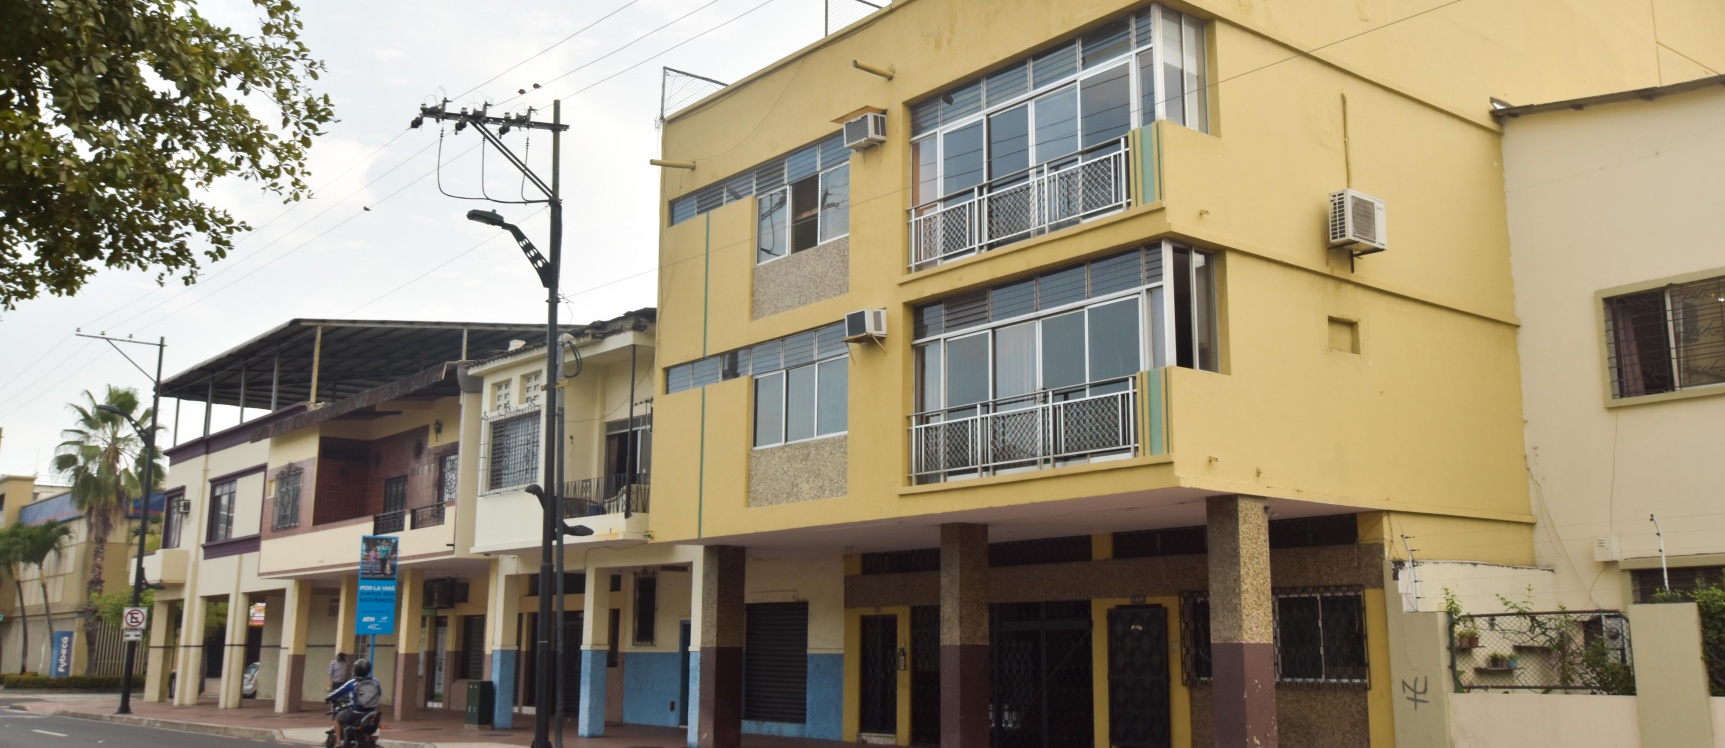 GeoBienes - Departamento en venta ubicado en el Barrio Centenario  - Plusvalia Guayaquil Casas de venta y alquiler Inmobiliaria Ecuador